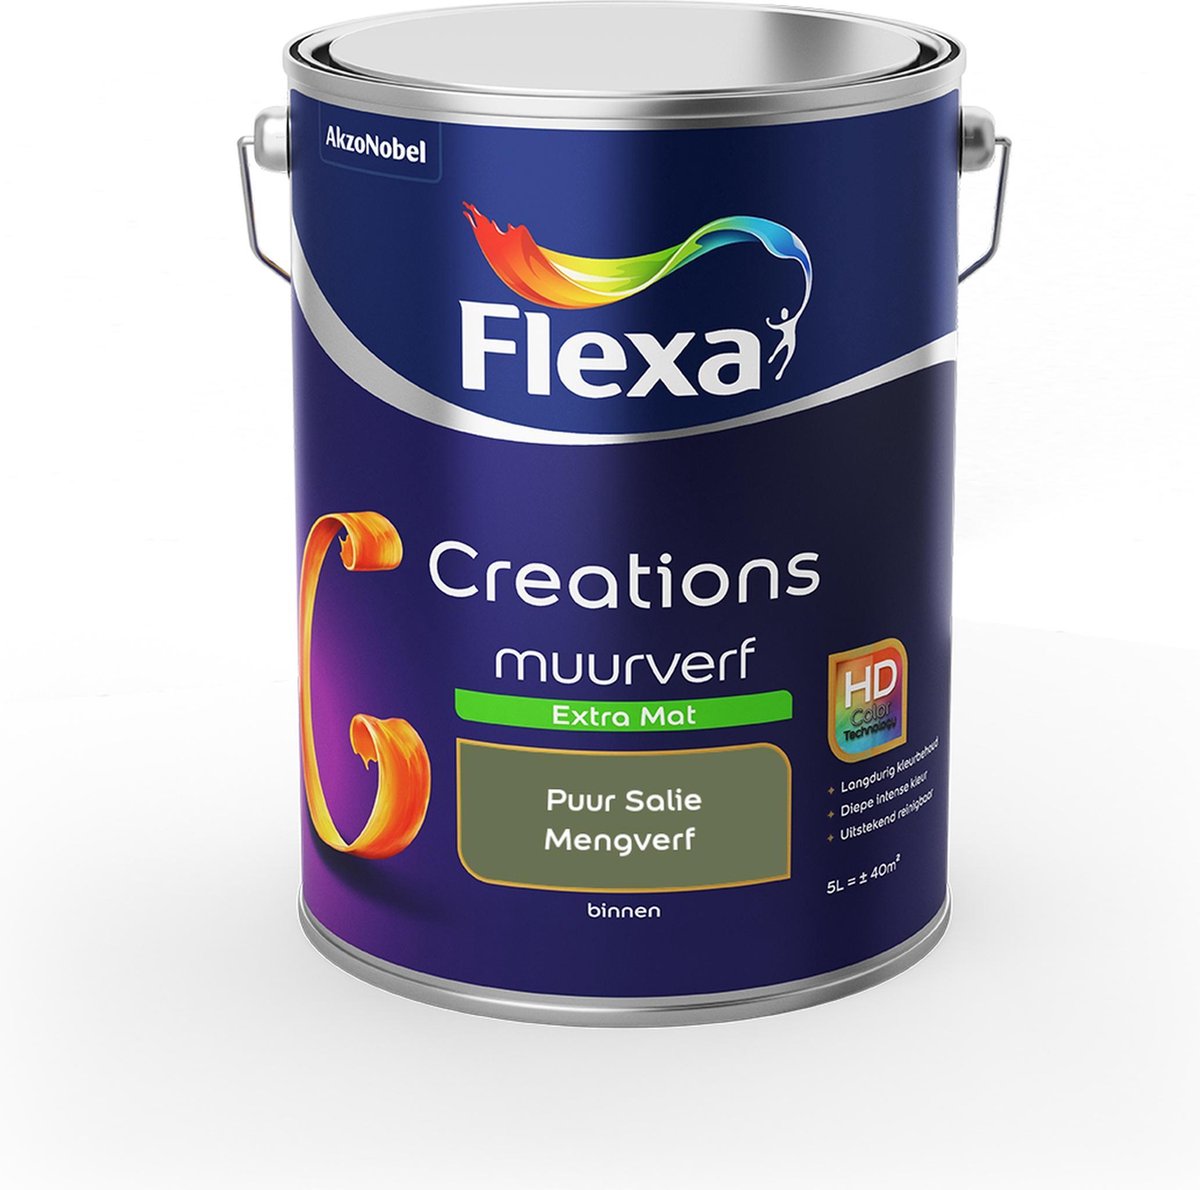 Flexa Creations - Muurverf Extra Mat - Puur Salie - Mengkleuren Collectie- 5 Liter